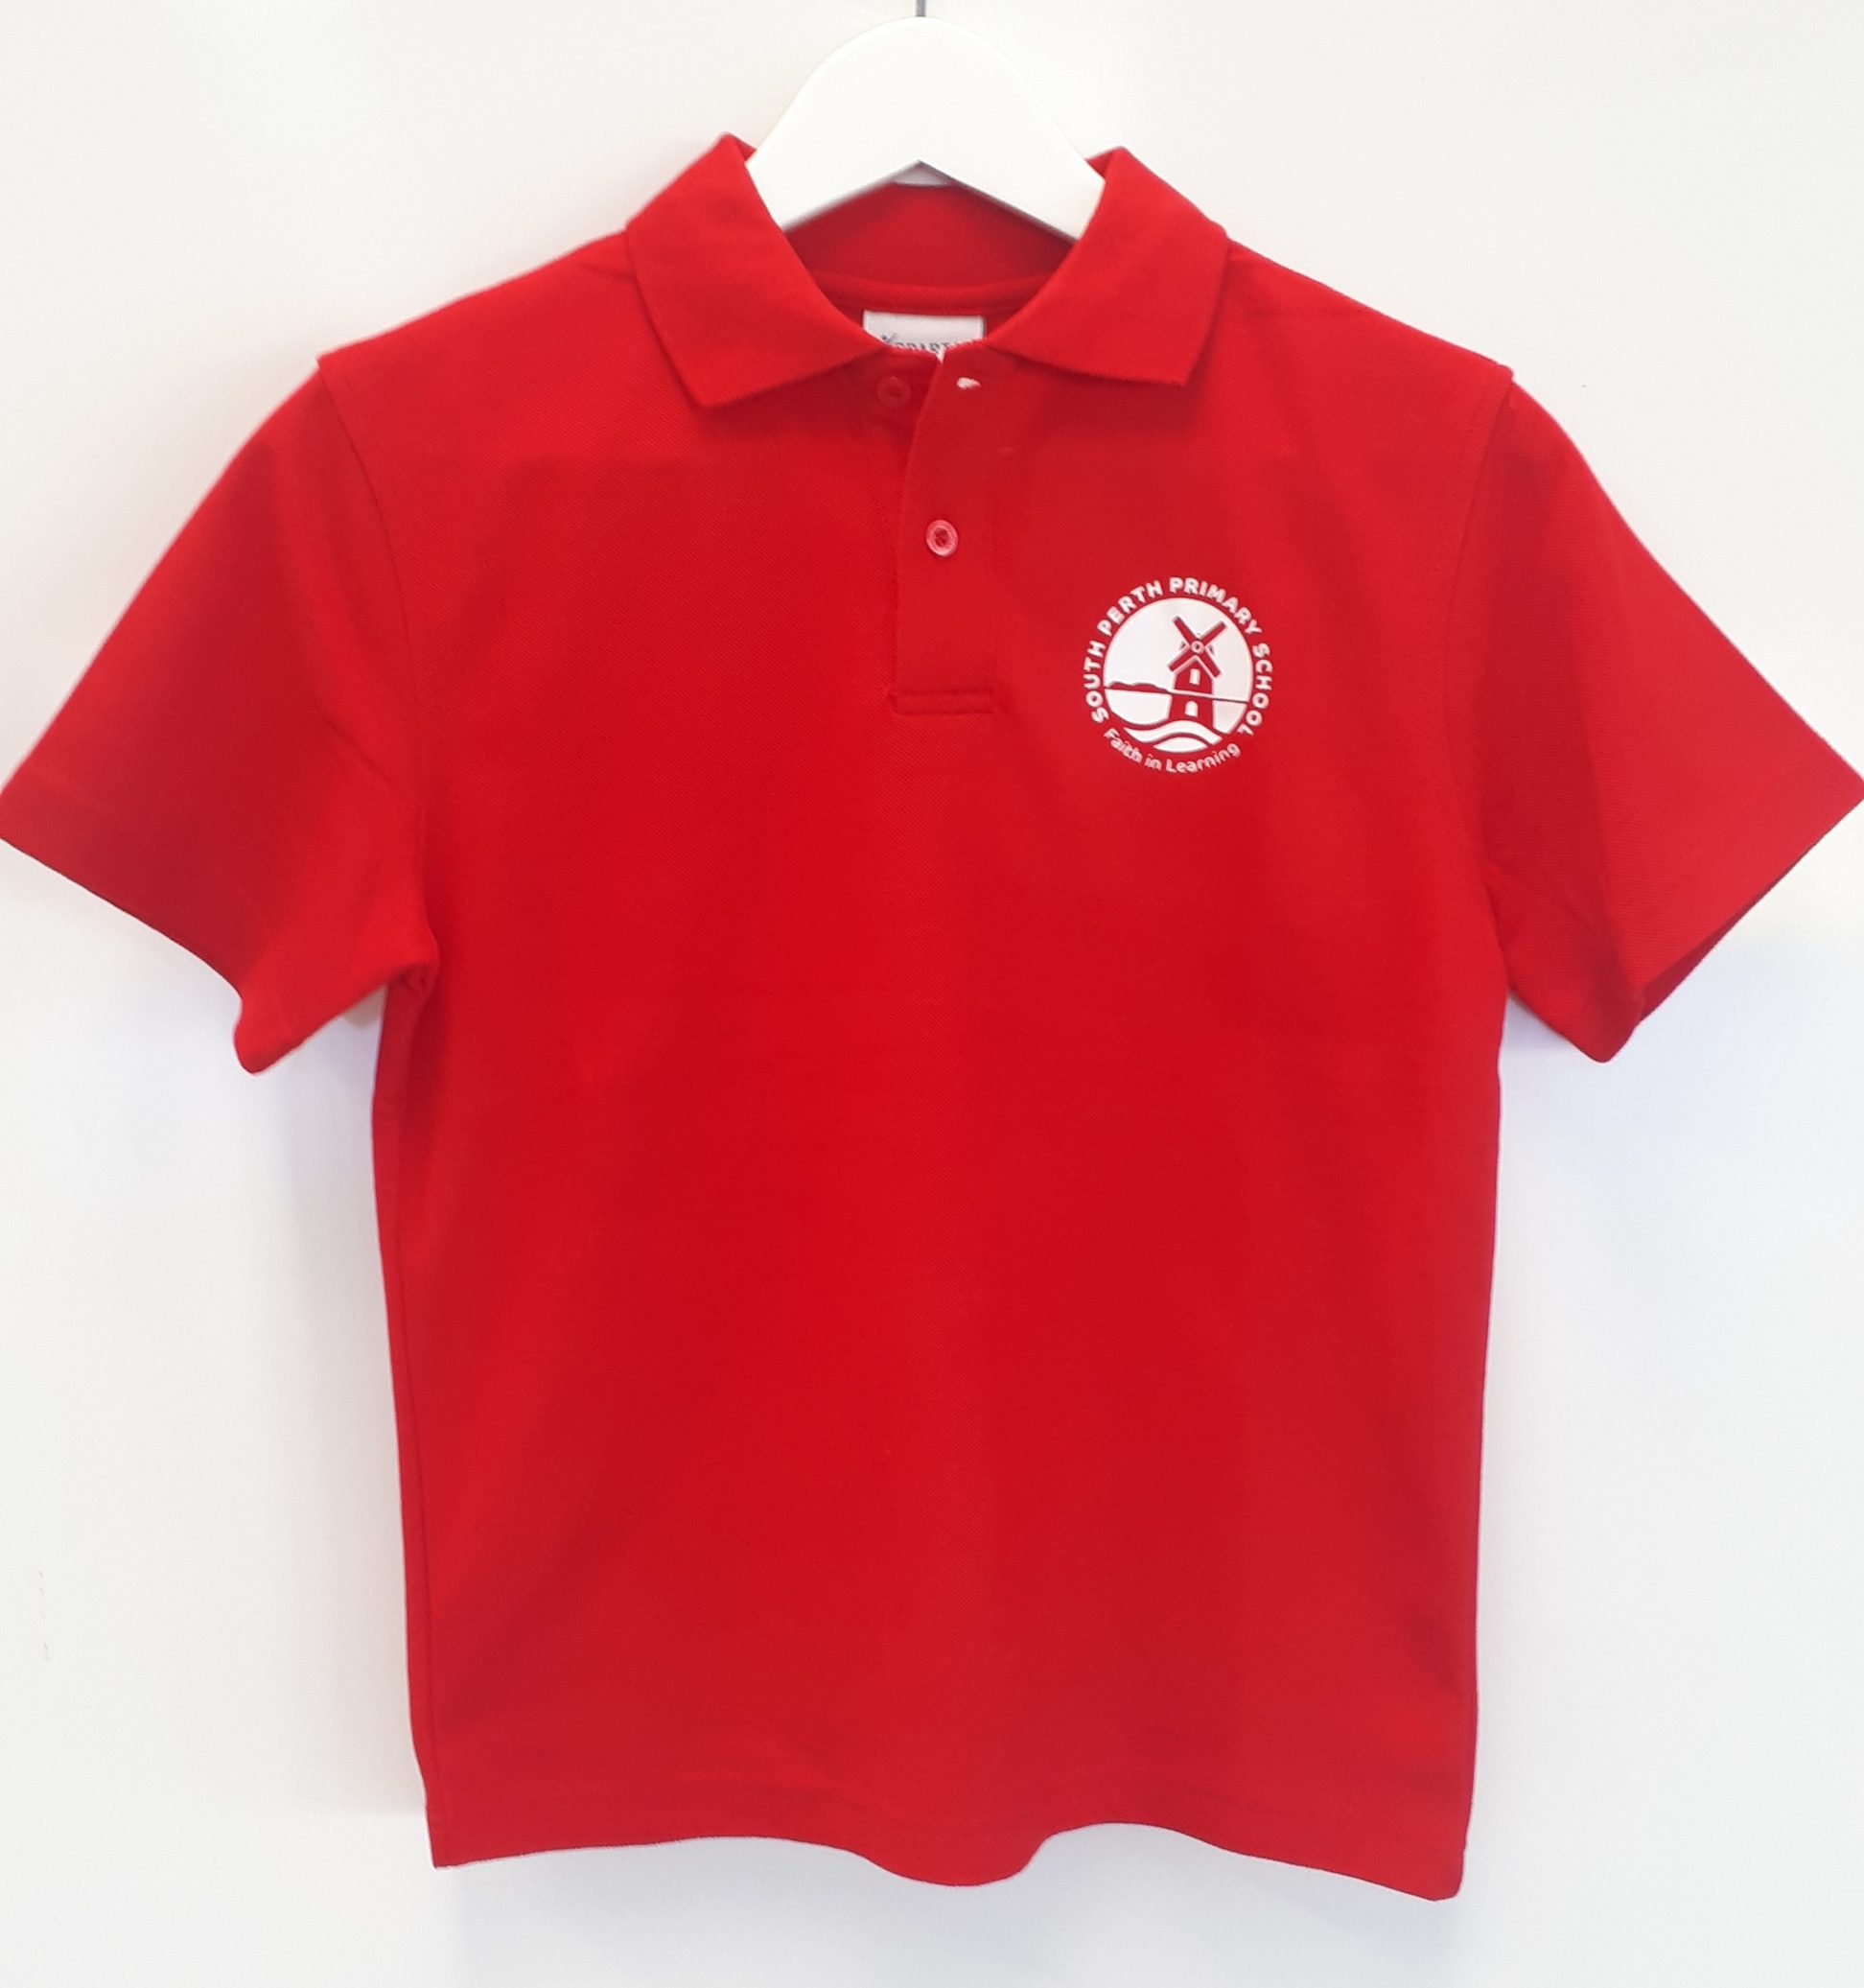 Uniform Shop - South Perth Primary School